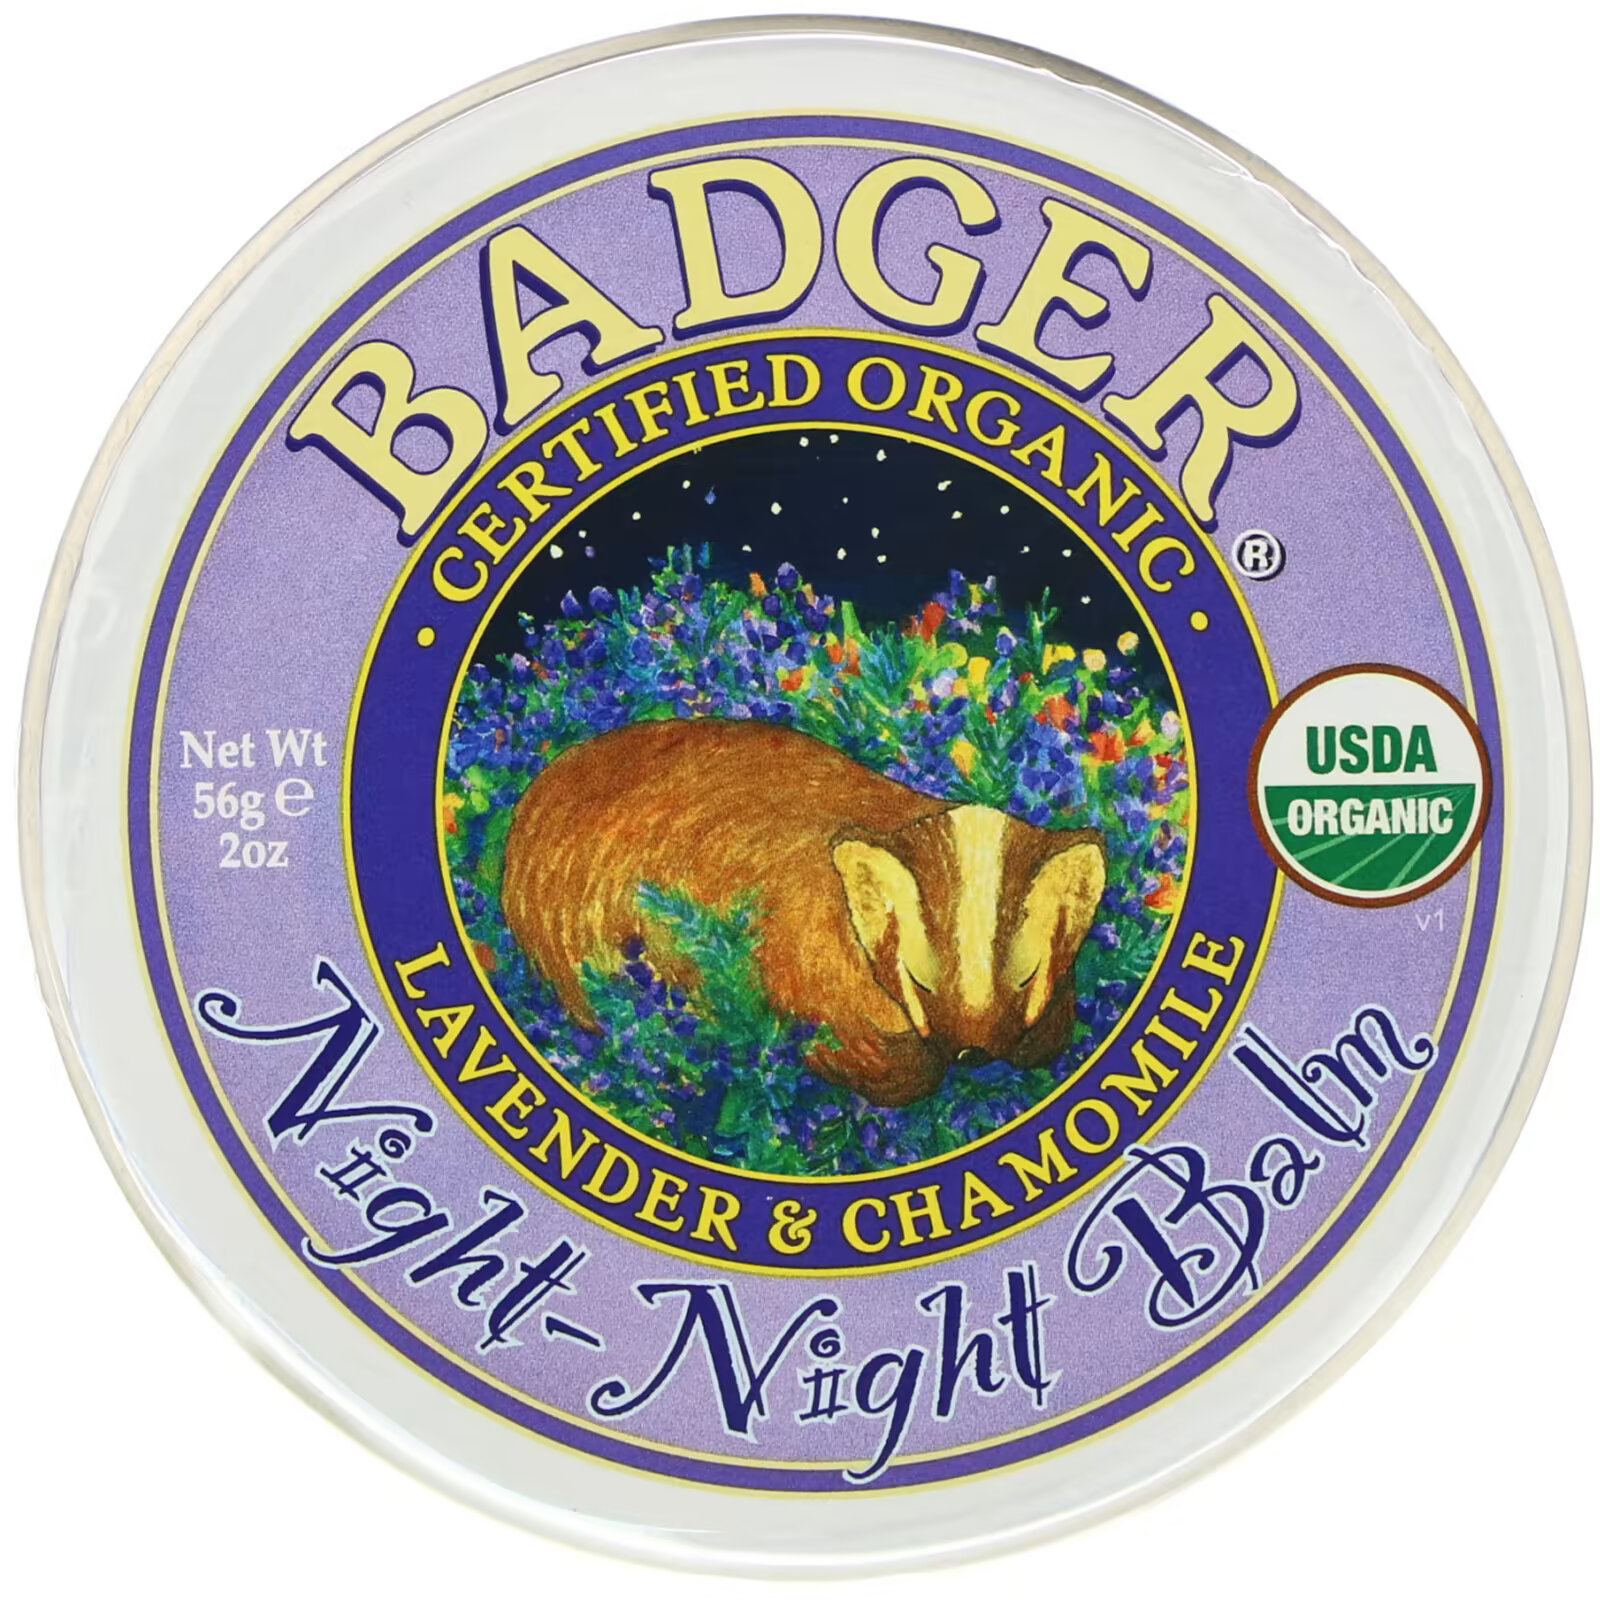 Badger Company, Organic, бальзам ночь-ночь, лаванда и ромашка, 2 унции (56 г) badger company детский бальзам ромашка и календула 21 г 0 75 унции